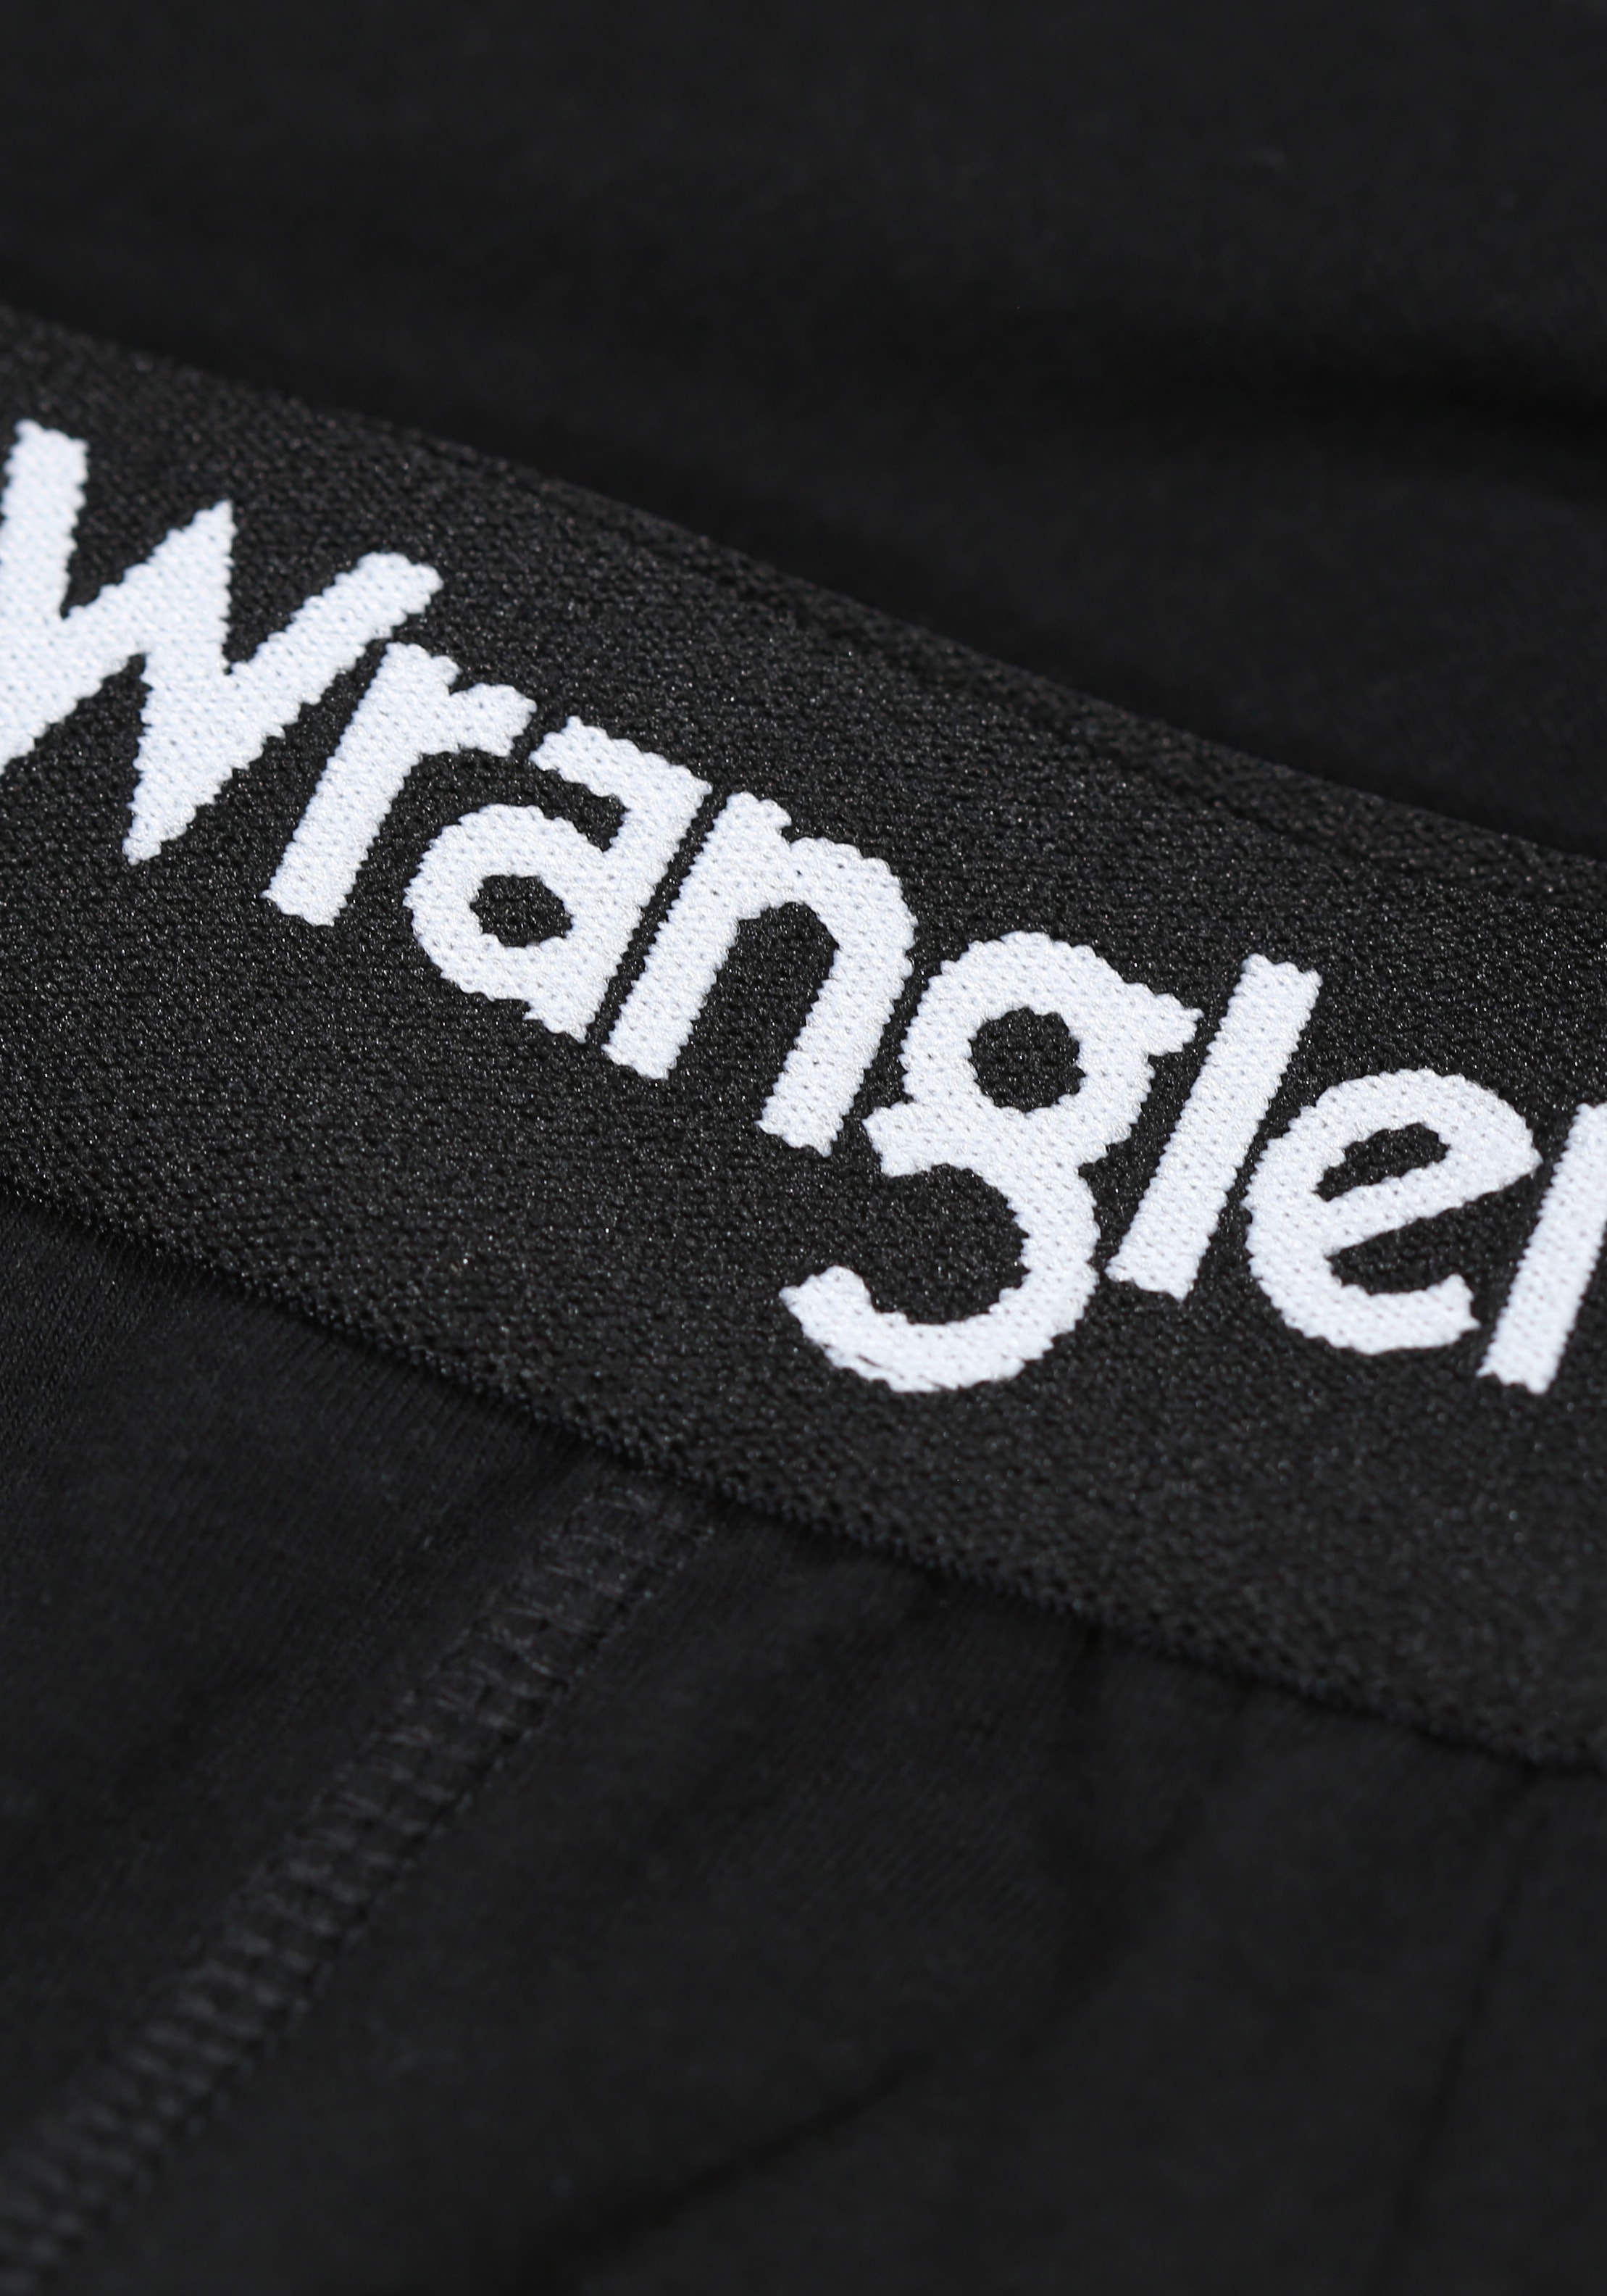 Wrangler Boxer »MASSON«, (3er Pack), dehnbarer, elastischer Logobund